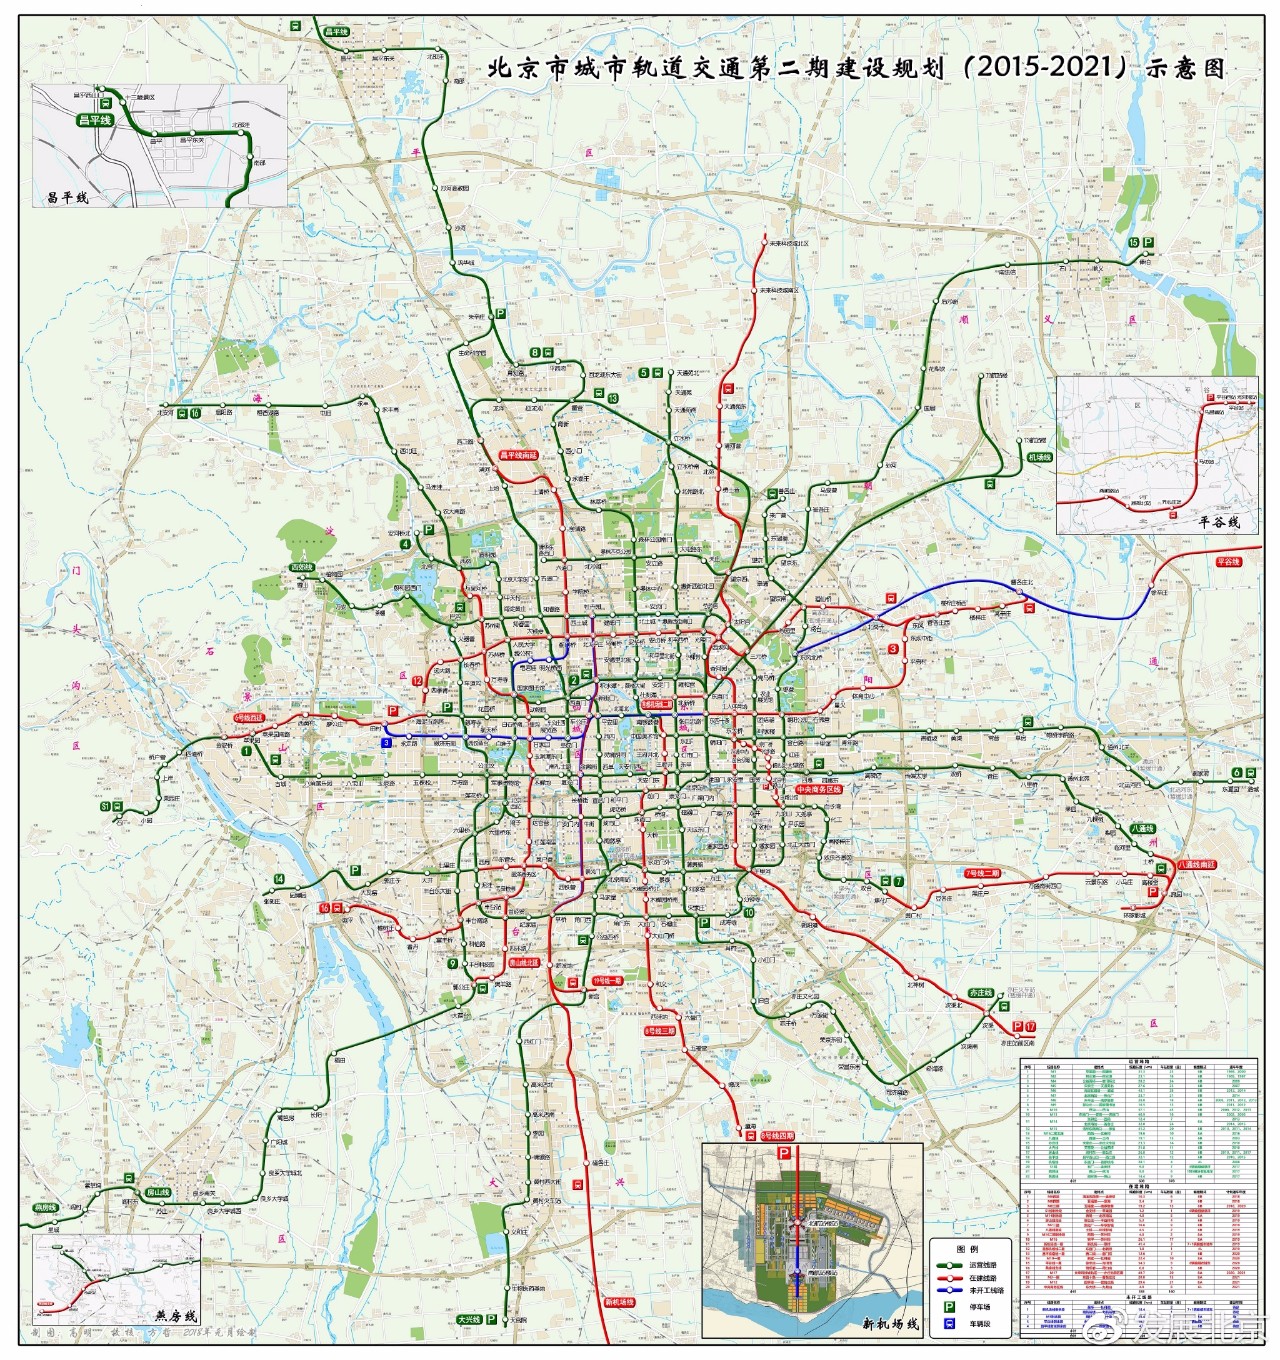 北京市到2021年的地铁规划图图片